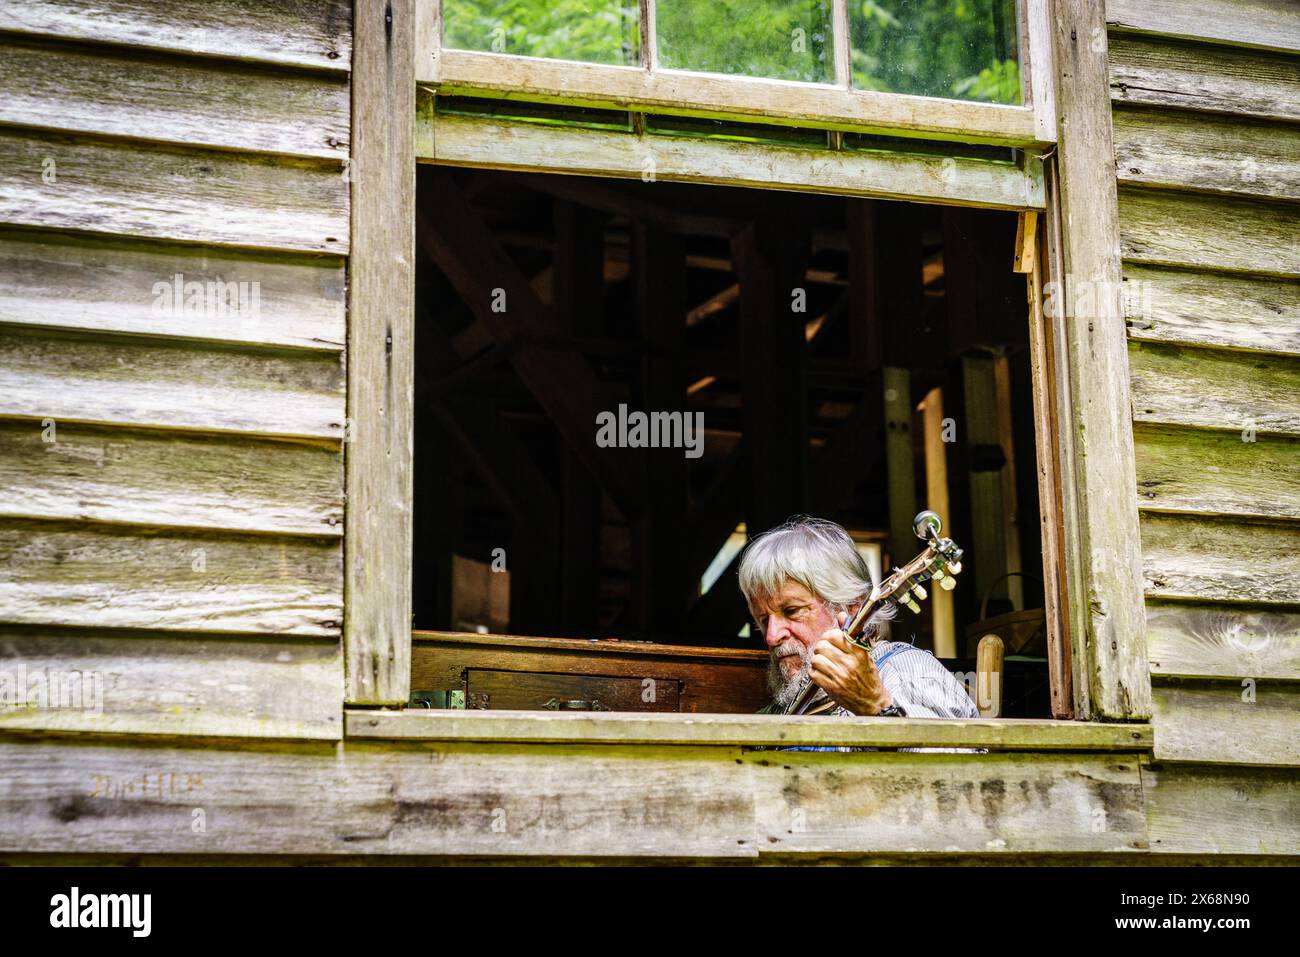 Great Smoky Mountains National Park, Mingus Mill, 12 giugno 2021: Un uomo sta suonando banjo vicino alla finestra dell'edificio storico di Mingus Mill Foto Stock